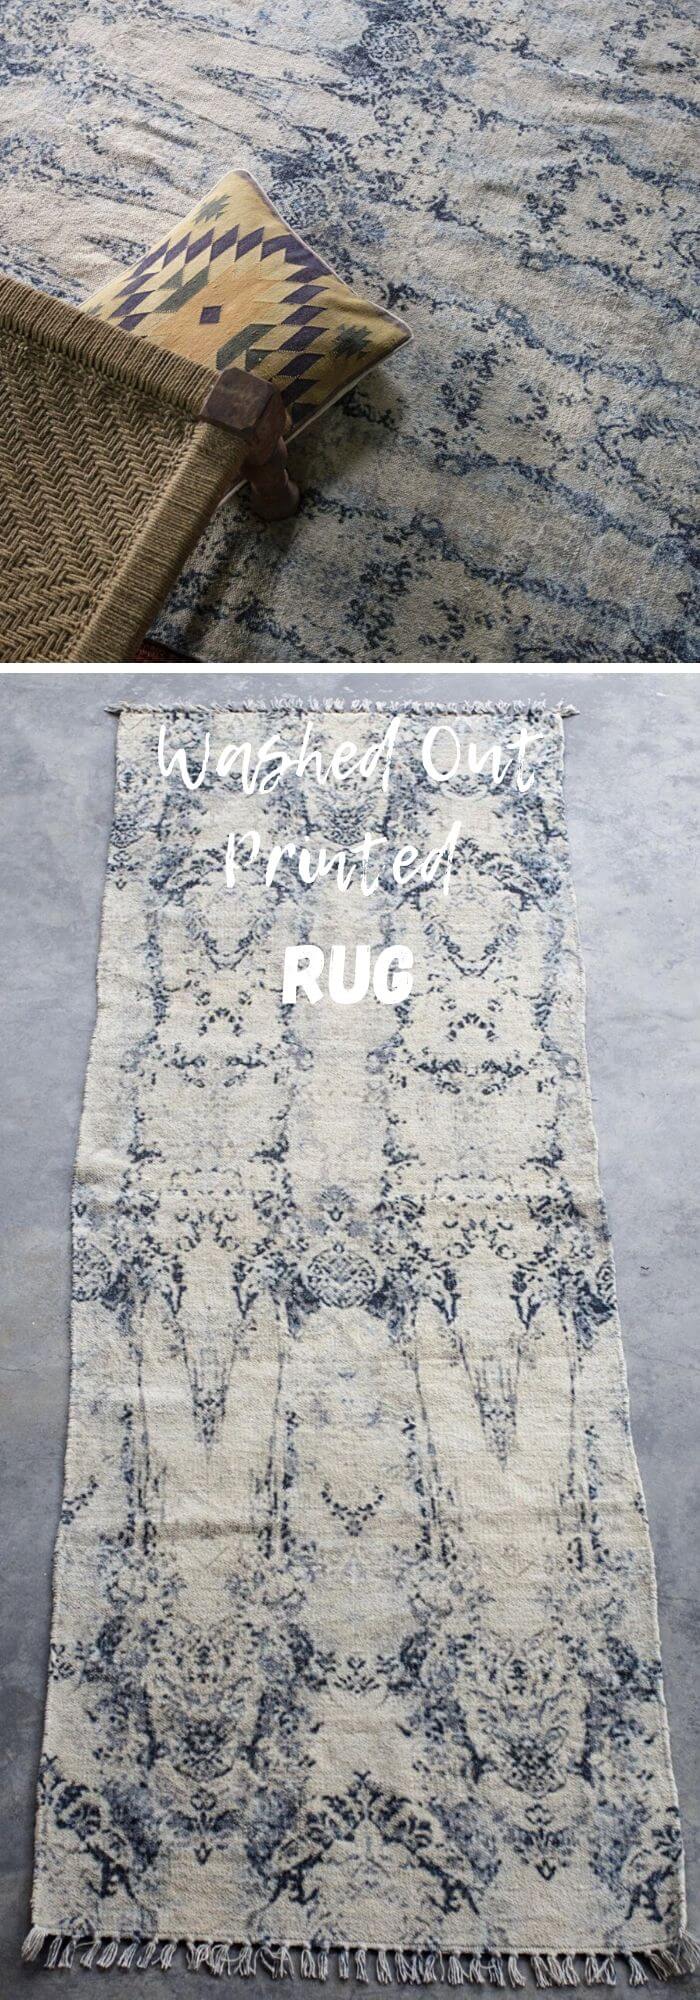 2 farmhouse rug ideas